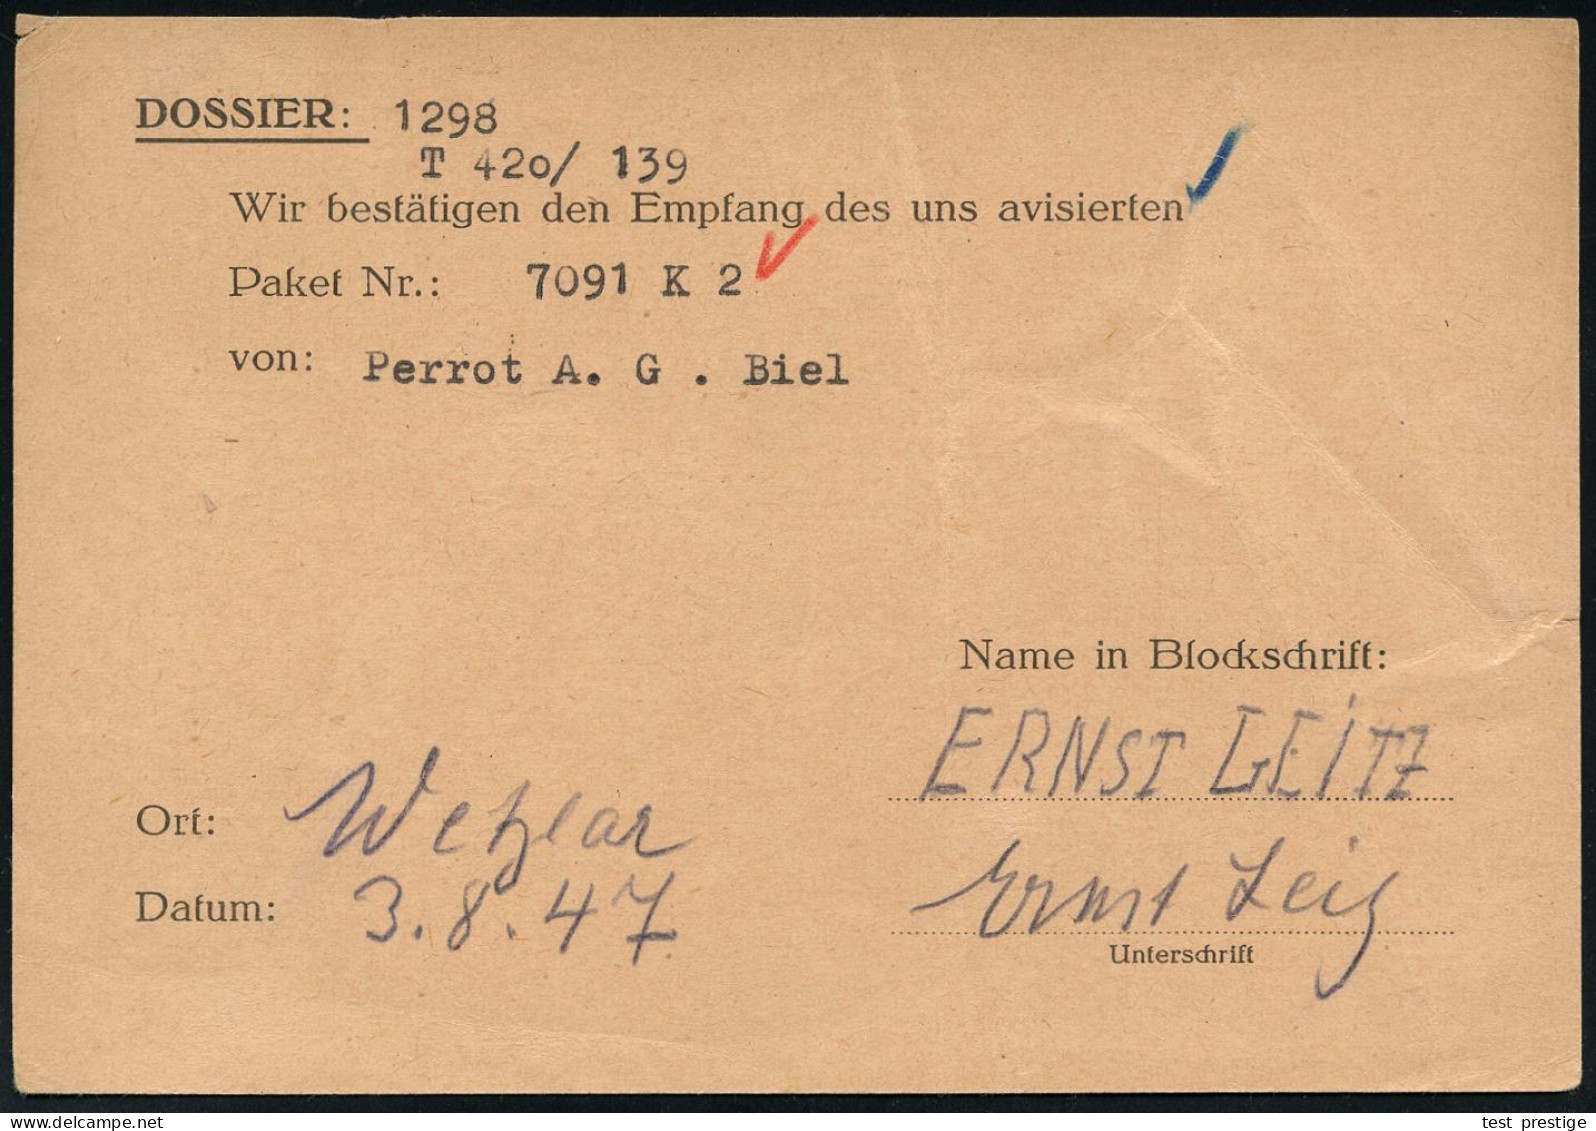 WETZLAR 1/ Leitz/ MIKROSKOPE 1947 (5.8.) Seltener, Aptierter AFS = Reichsadler U. "Reichs" Entfernt = Notmaßnahme! (Moti - Photographie